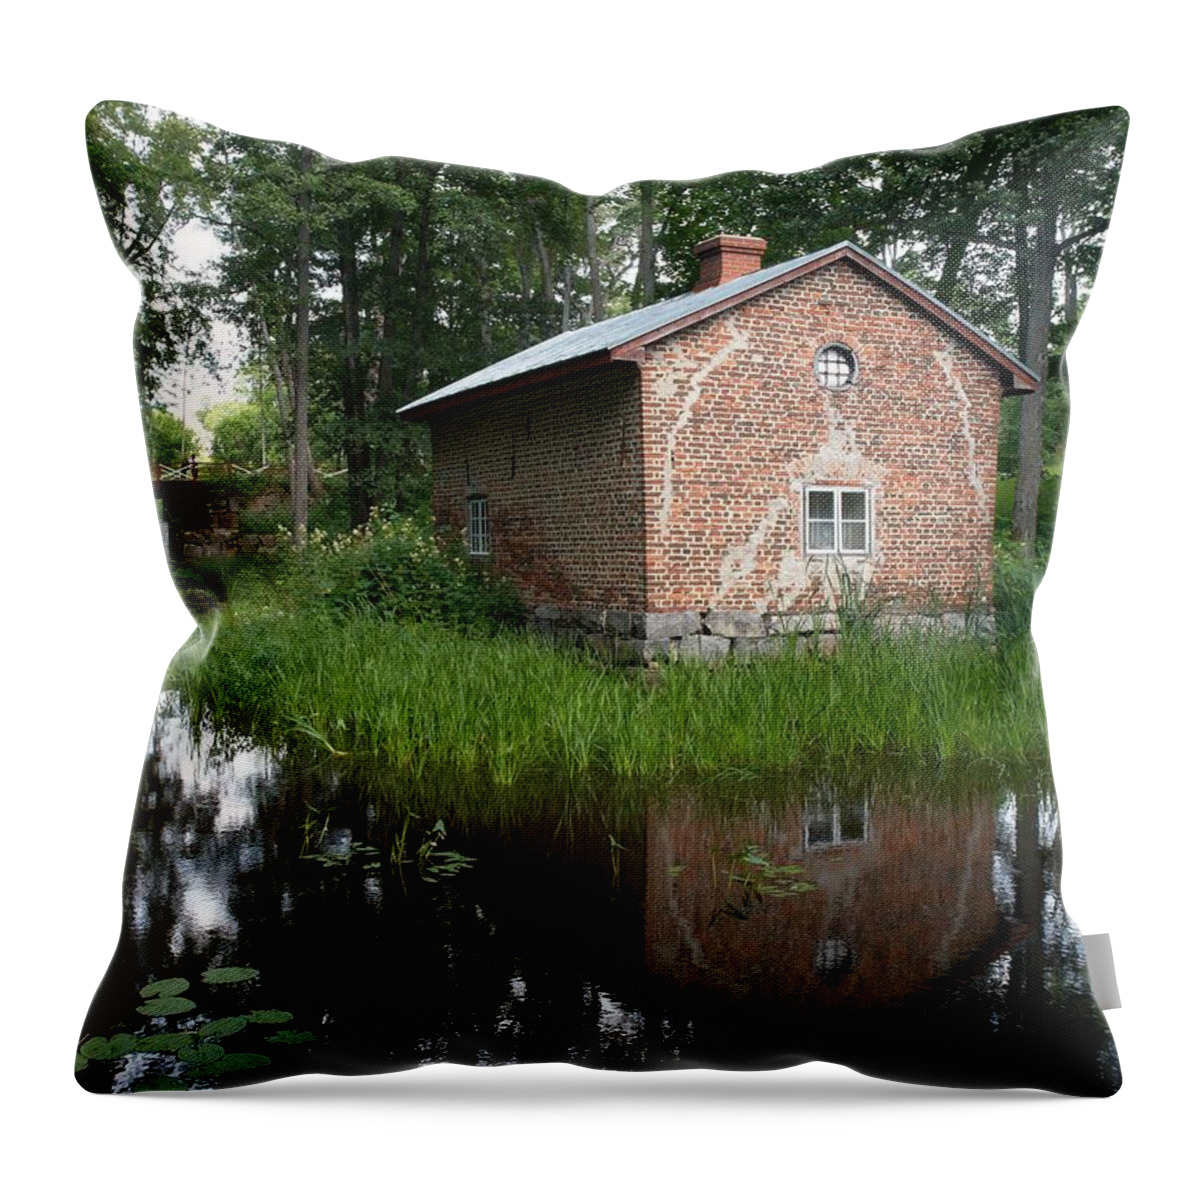 Lehtokukka Throw Pillow featuring the photograph Fagervik Gard 1 by Jouko Lehto